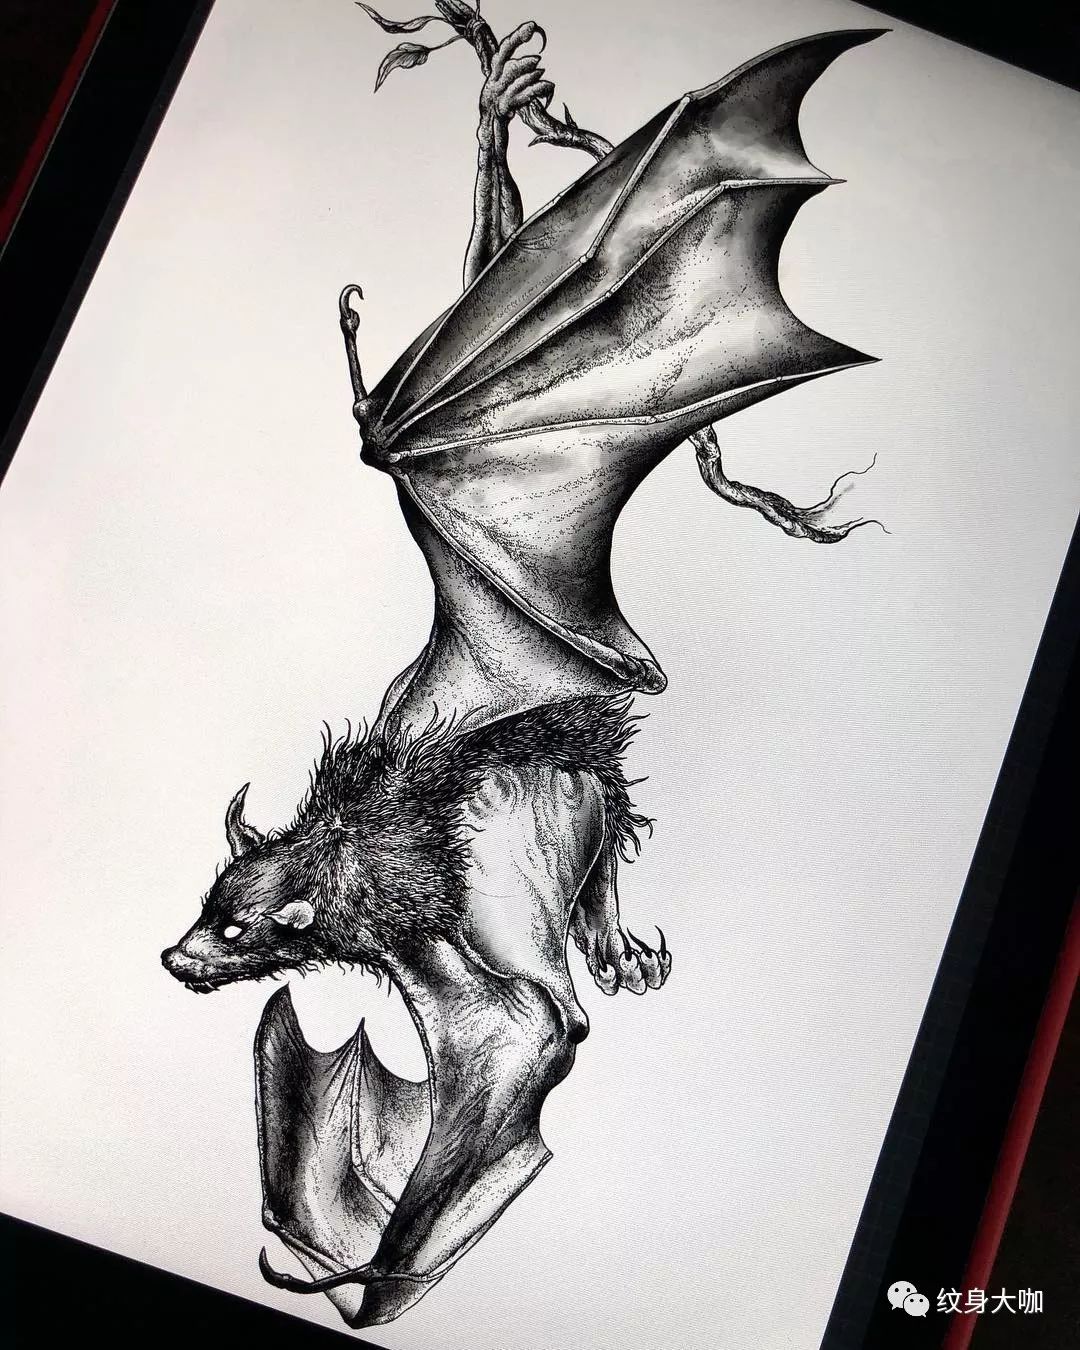 纹身手稿素材第486期:蝙蝠